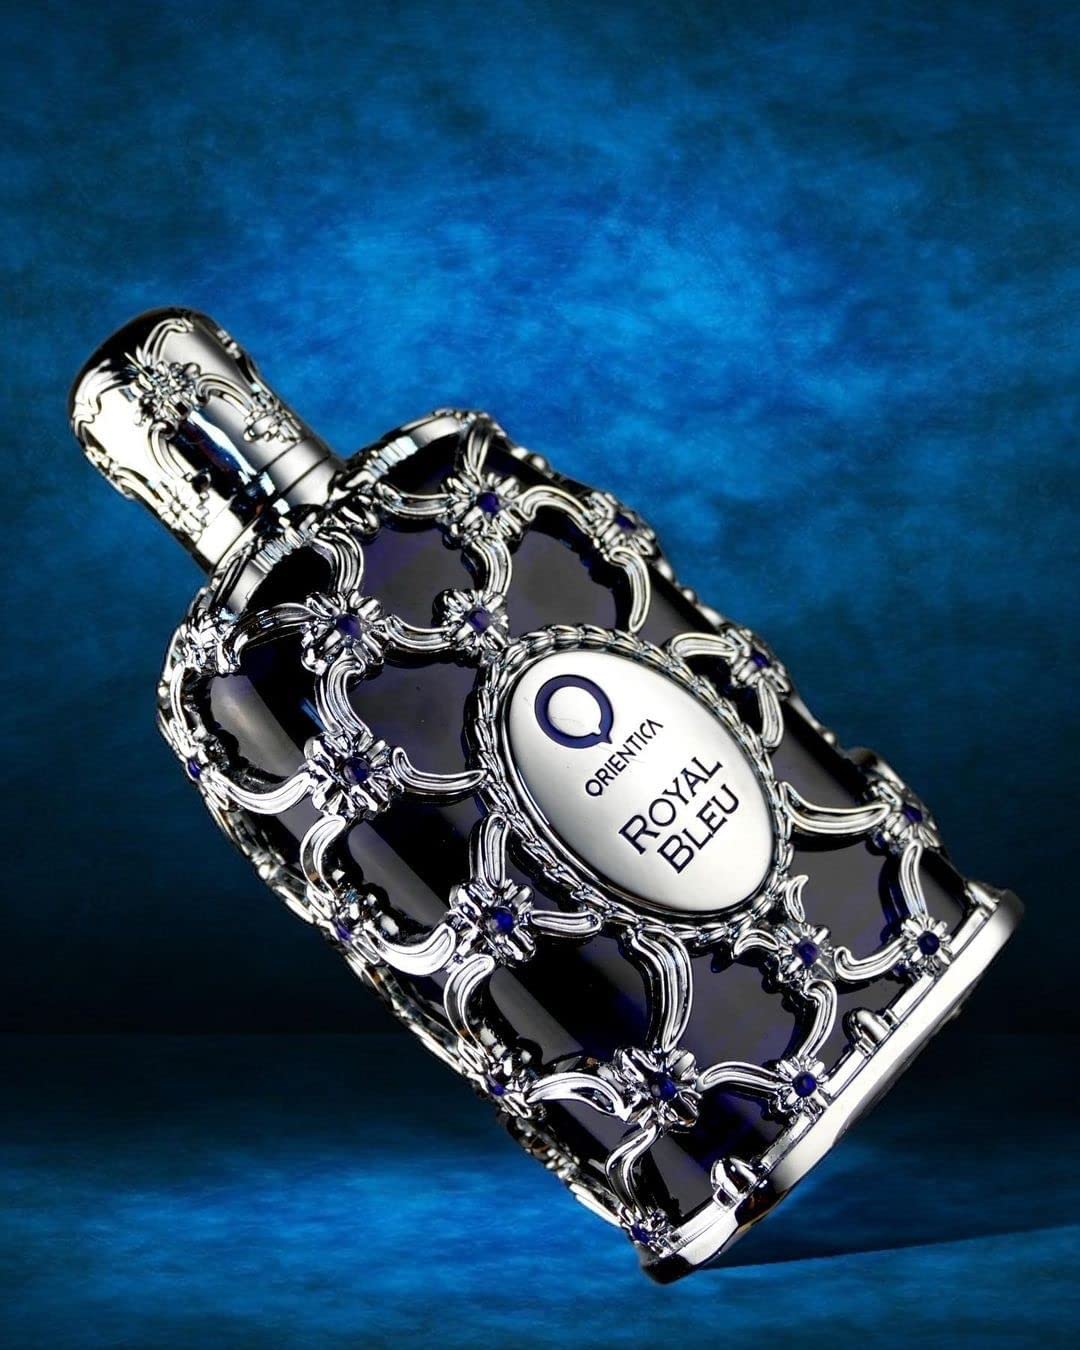 Orientica Luxury Colection Royal Bleu Eau de Parfum 80 ml